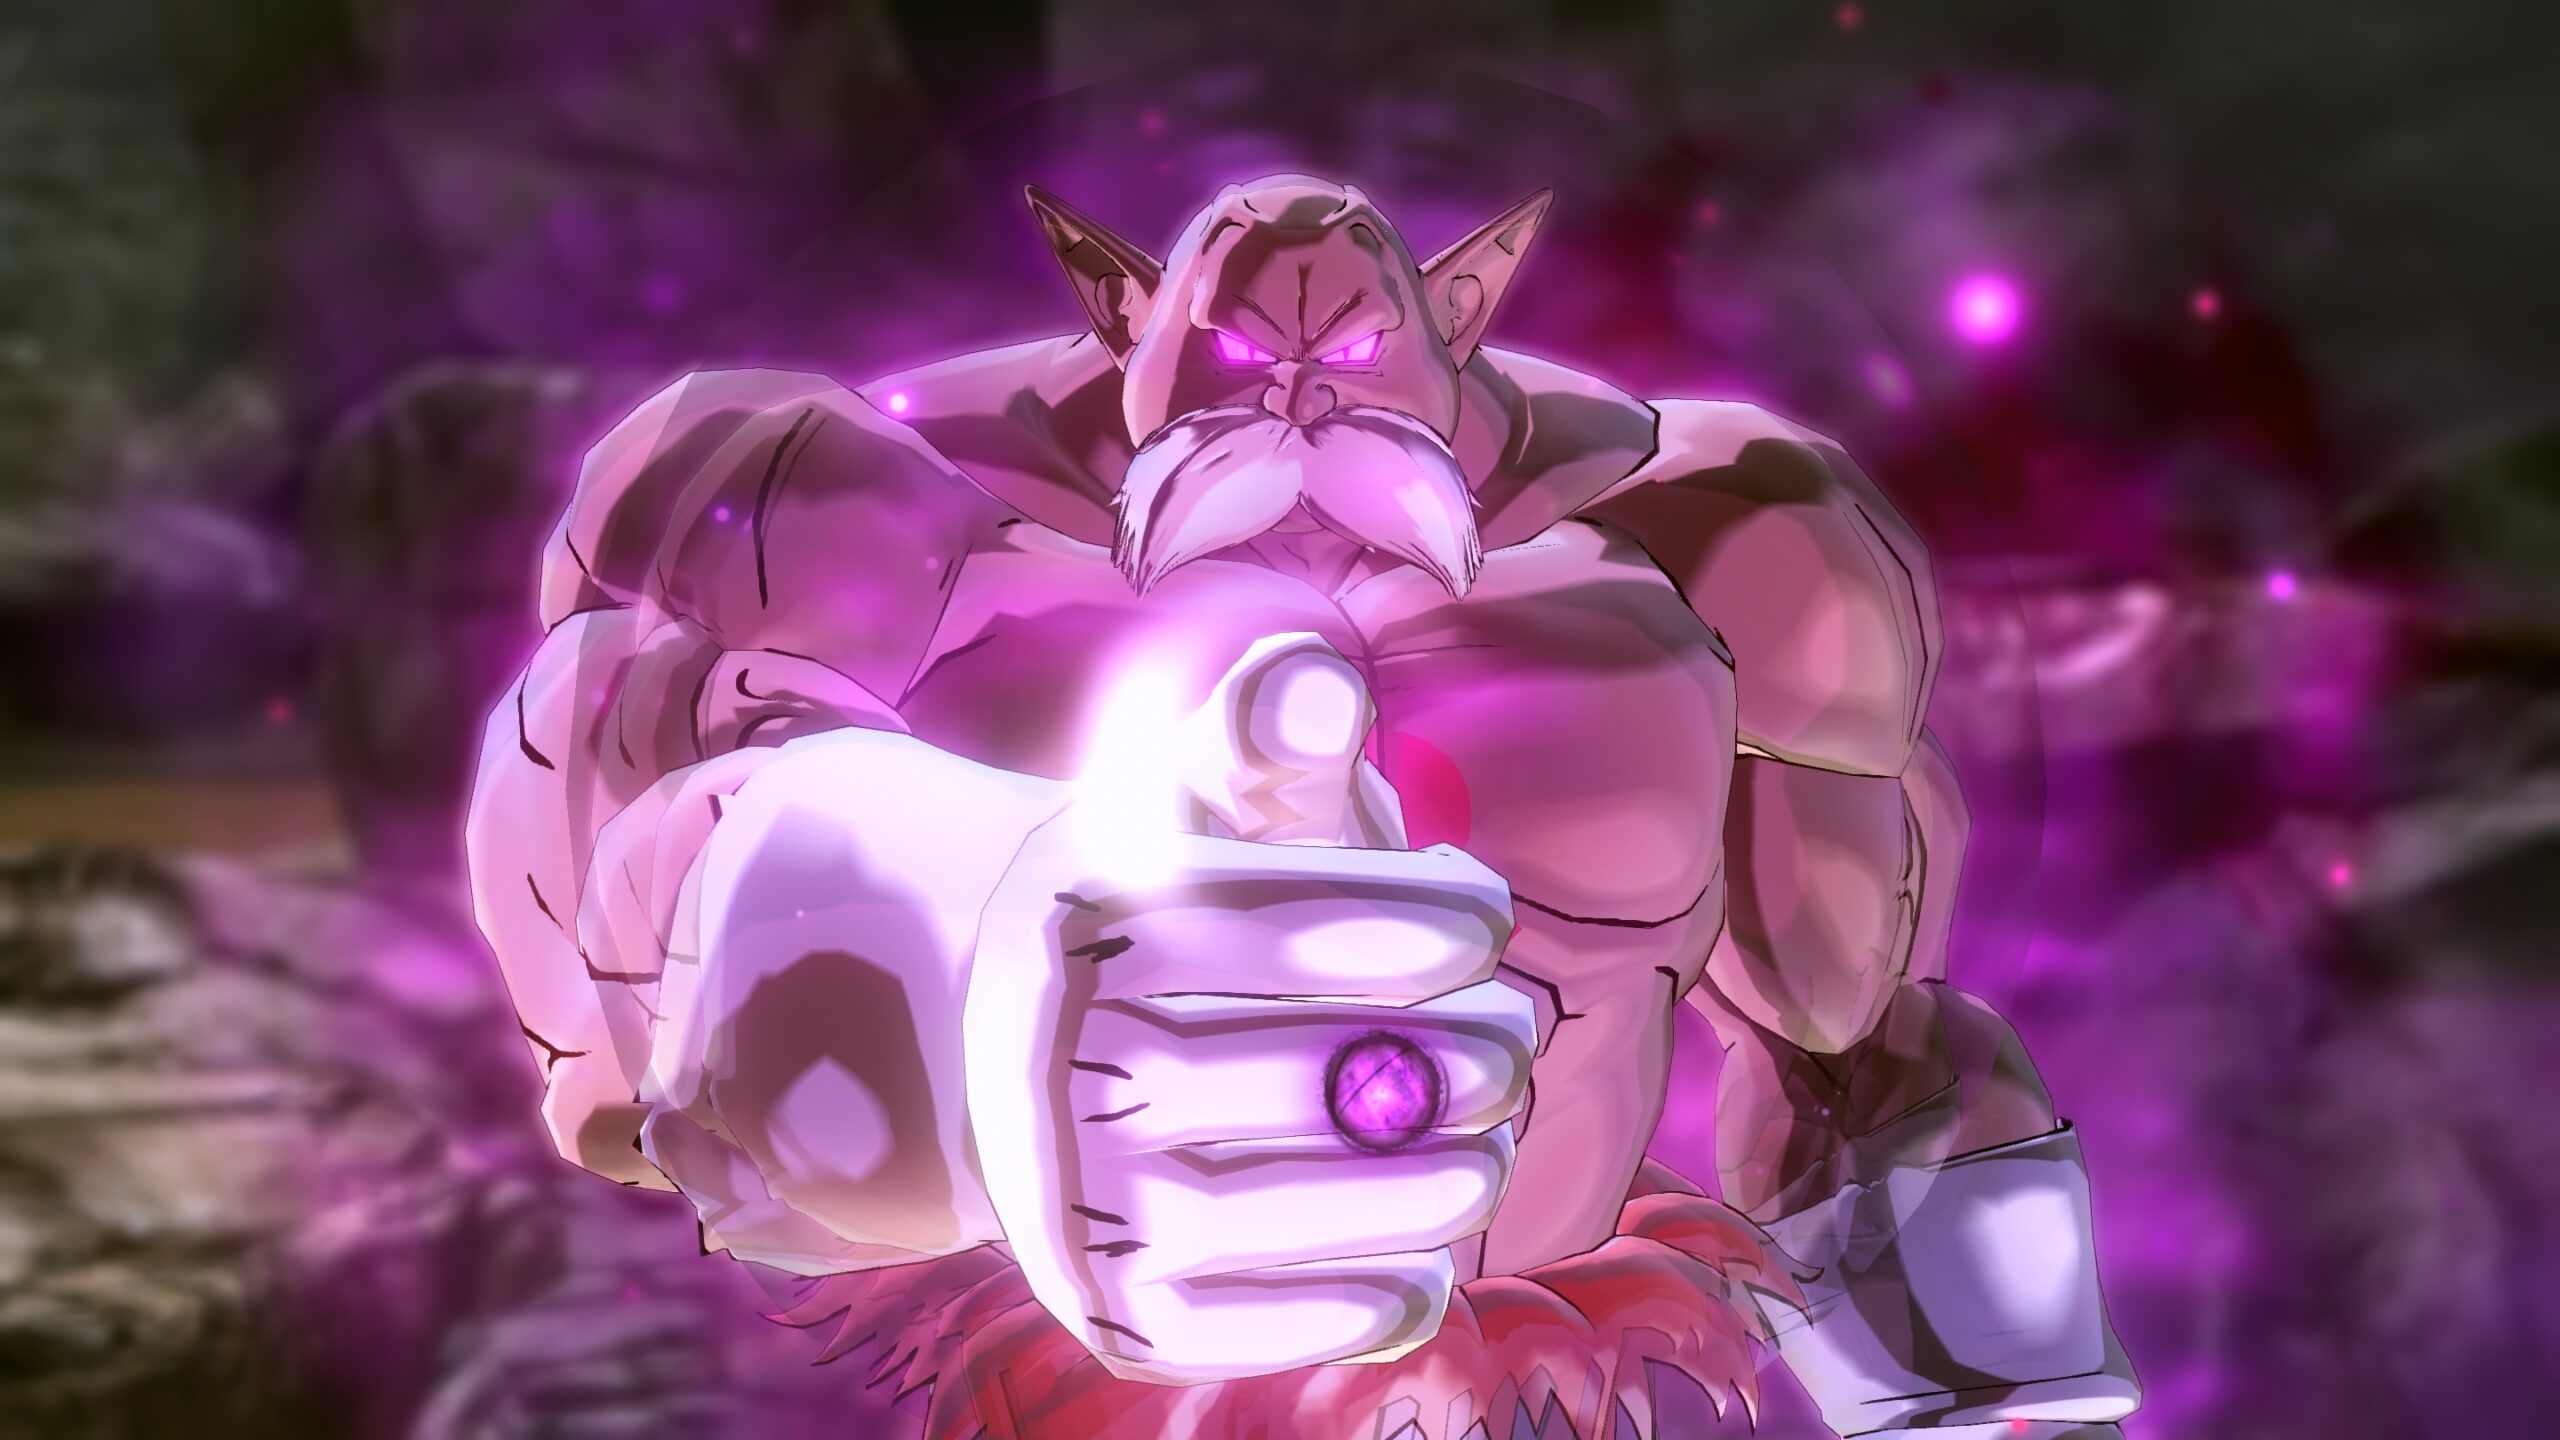 ドラゴンボール ゼノバース2 のdlcキャラクター トッポ 破壊神モード のスクリーンショットが公開 Nintendo Switch 情報ブログ